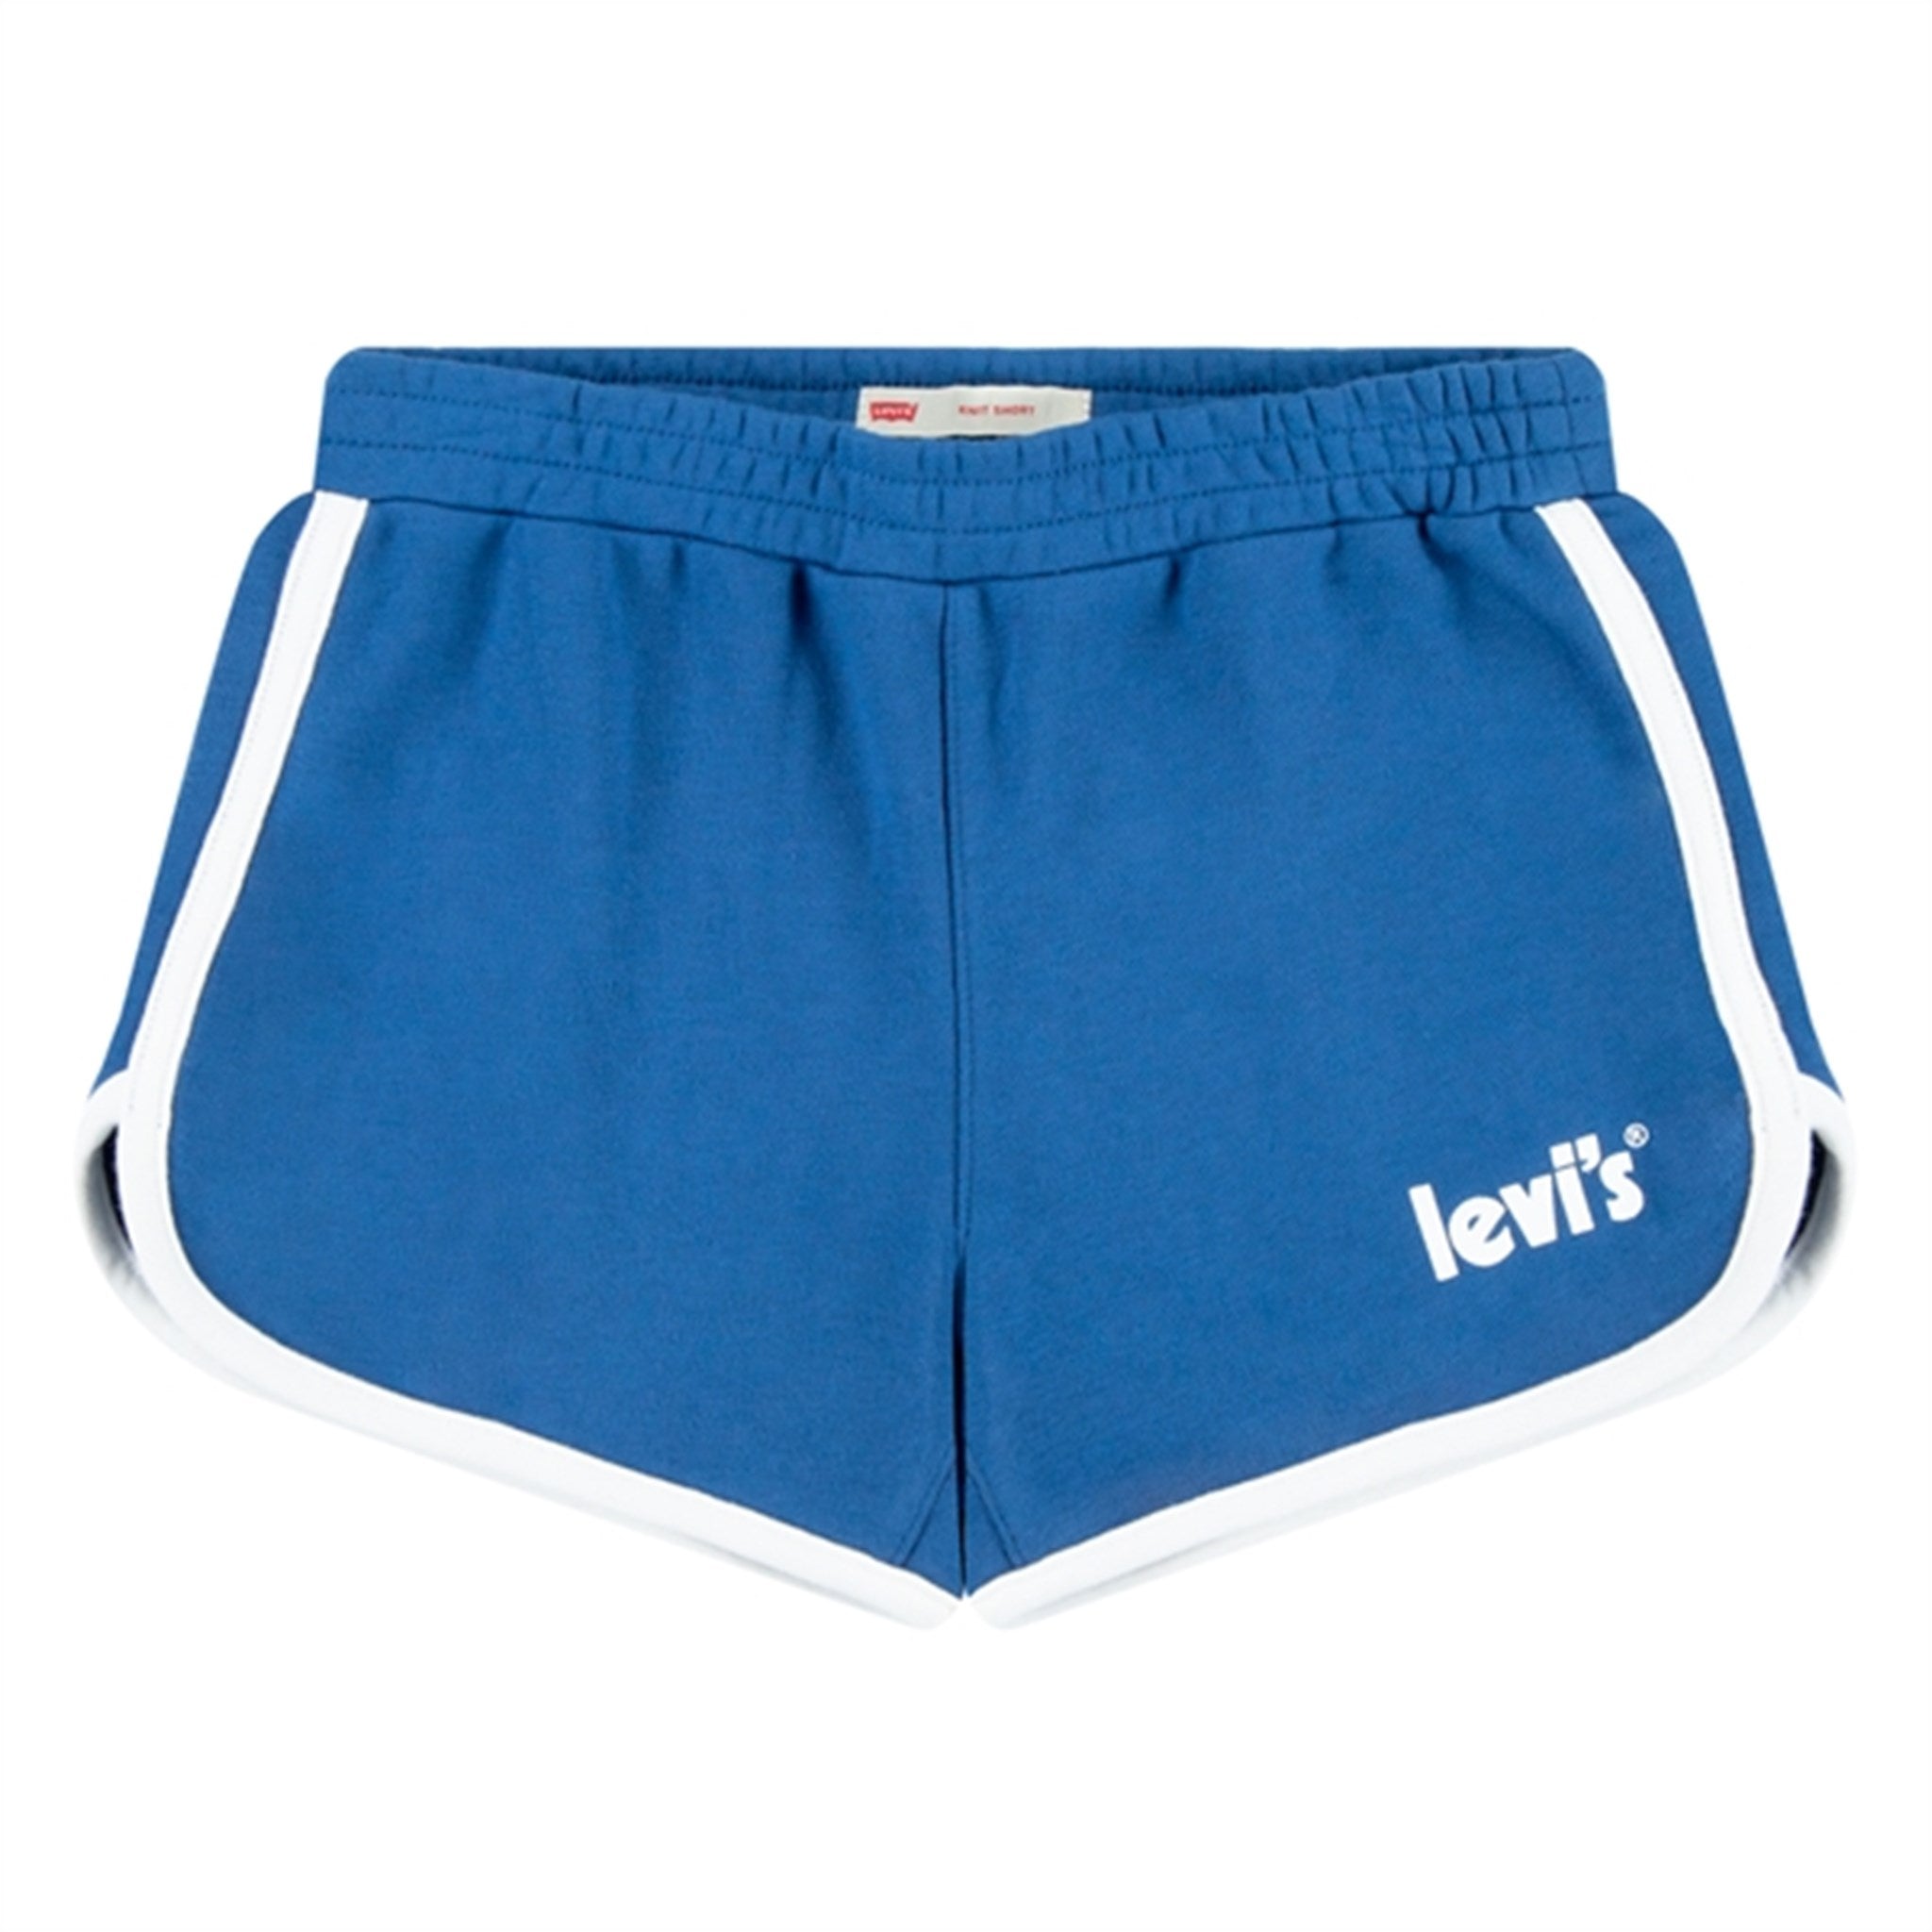 Levi's Dolphin Shorts Blue